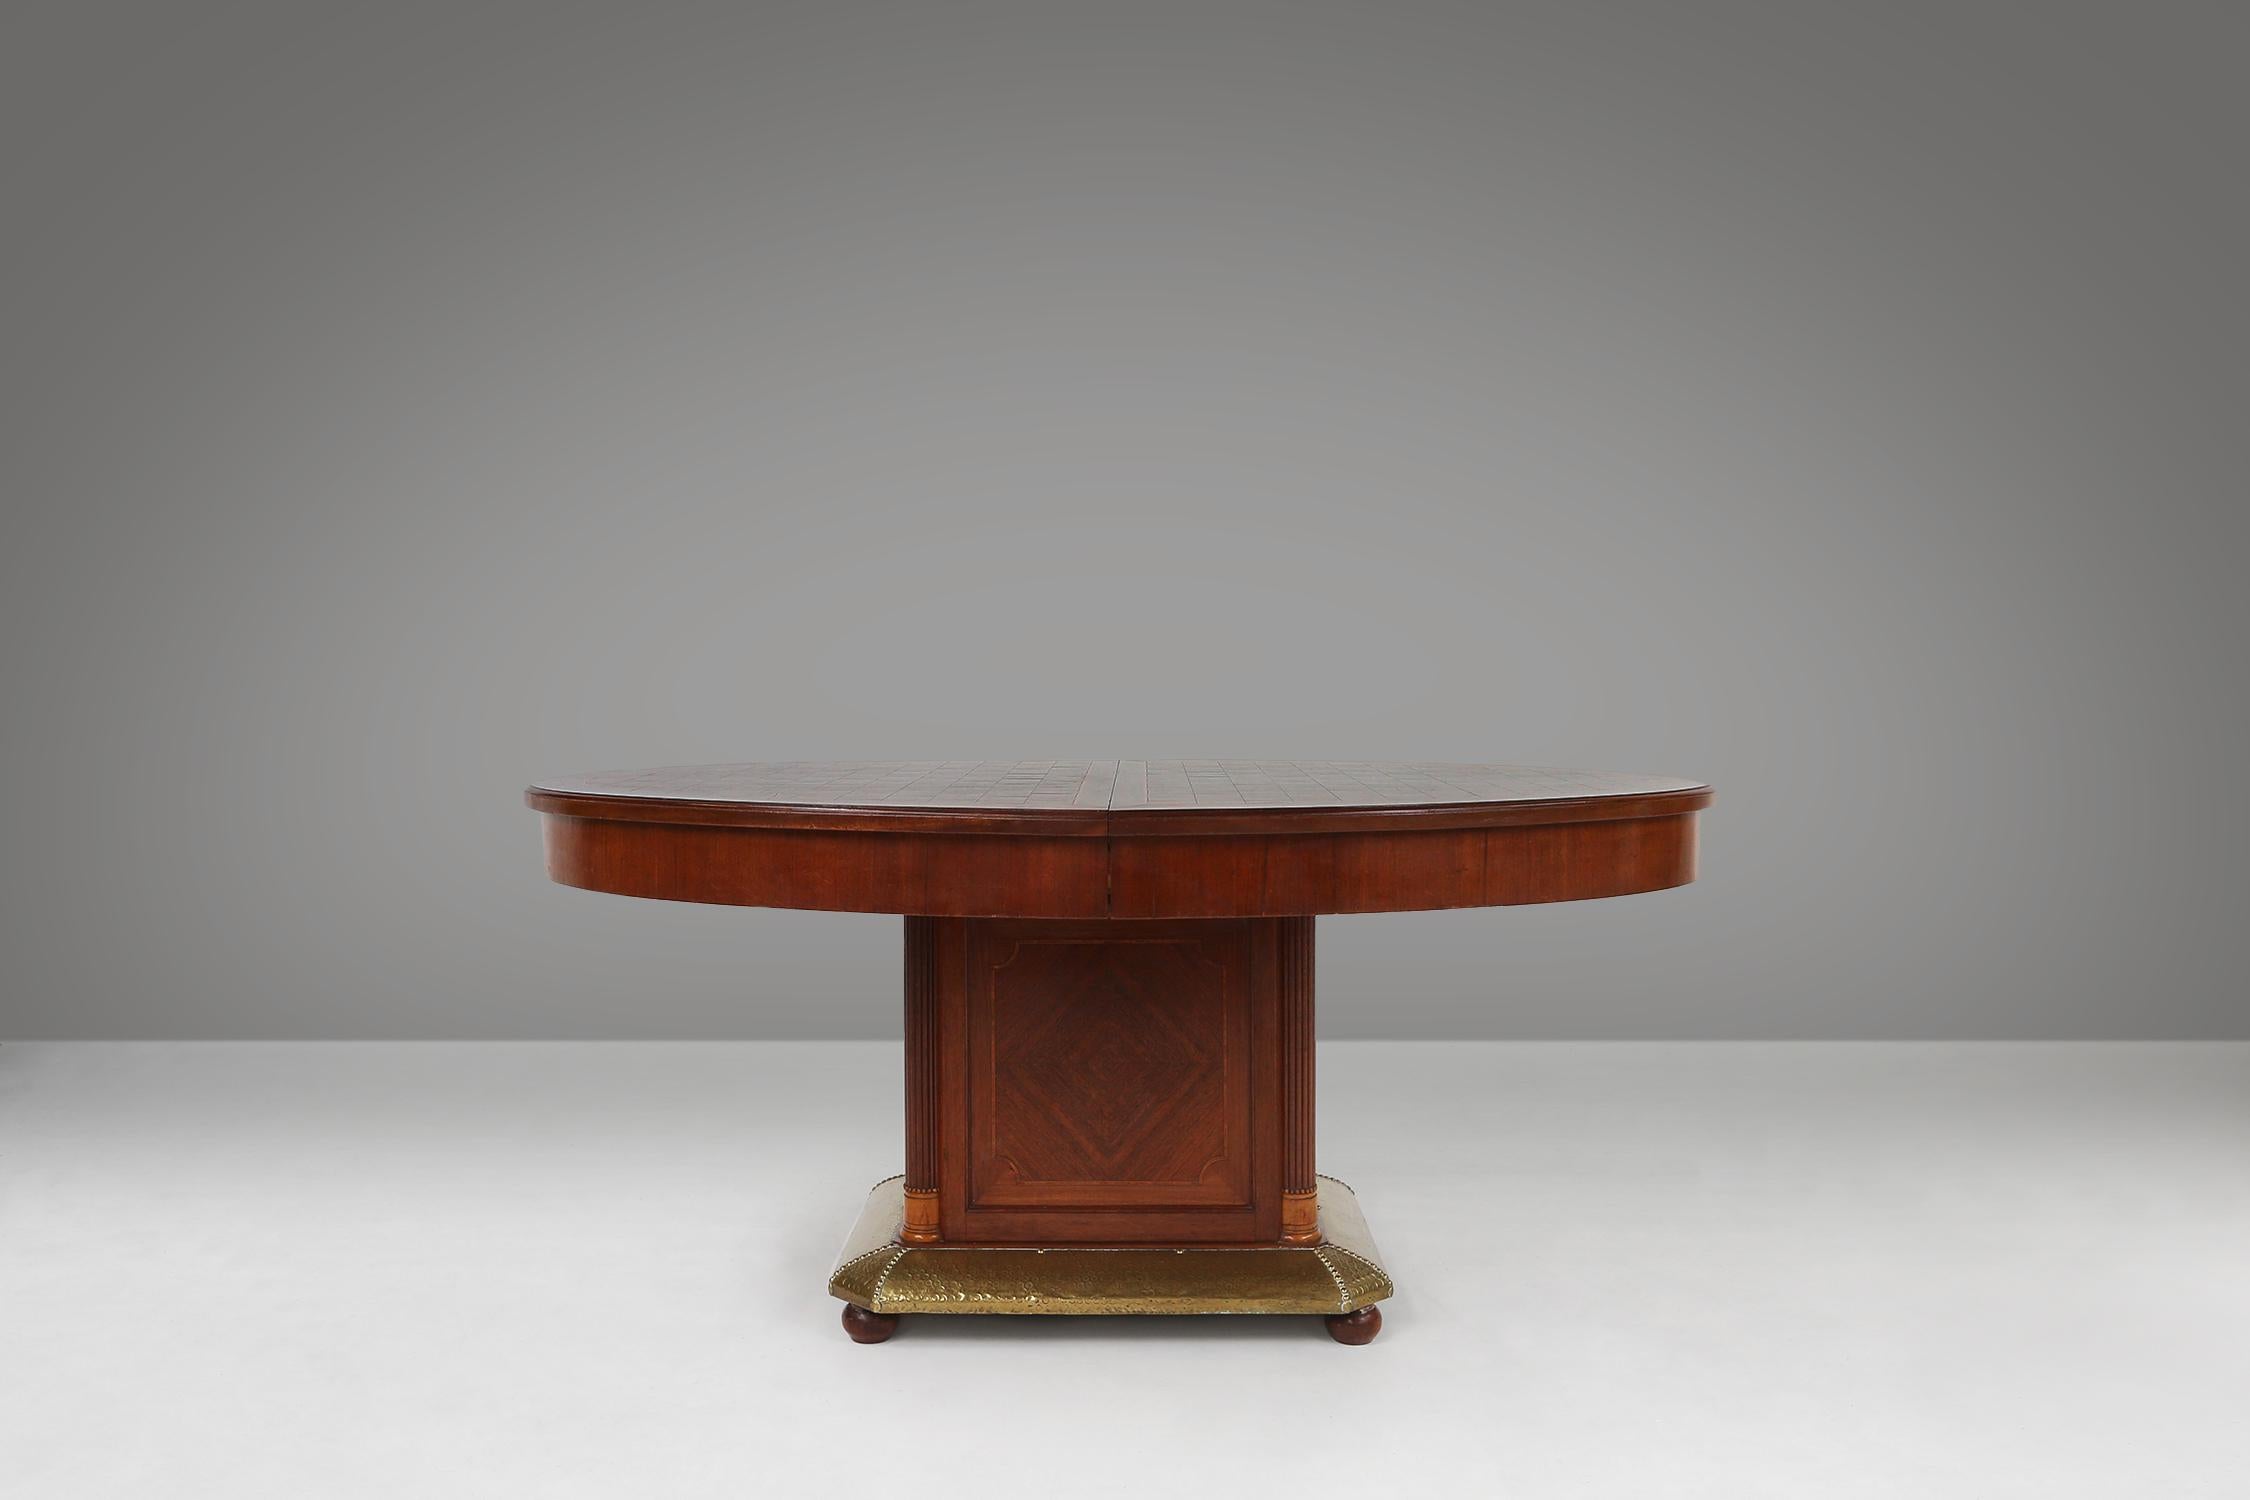 Cette table de salle à manger Art déco a été fabriquée par De Coene en Belgique en 1930. Cette table est en bois avec incrustation de bois et a une base en laiton. La table est de forme ovale et son plateau est orné d'un motif d'échiquier. La base